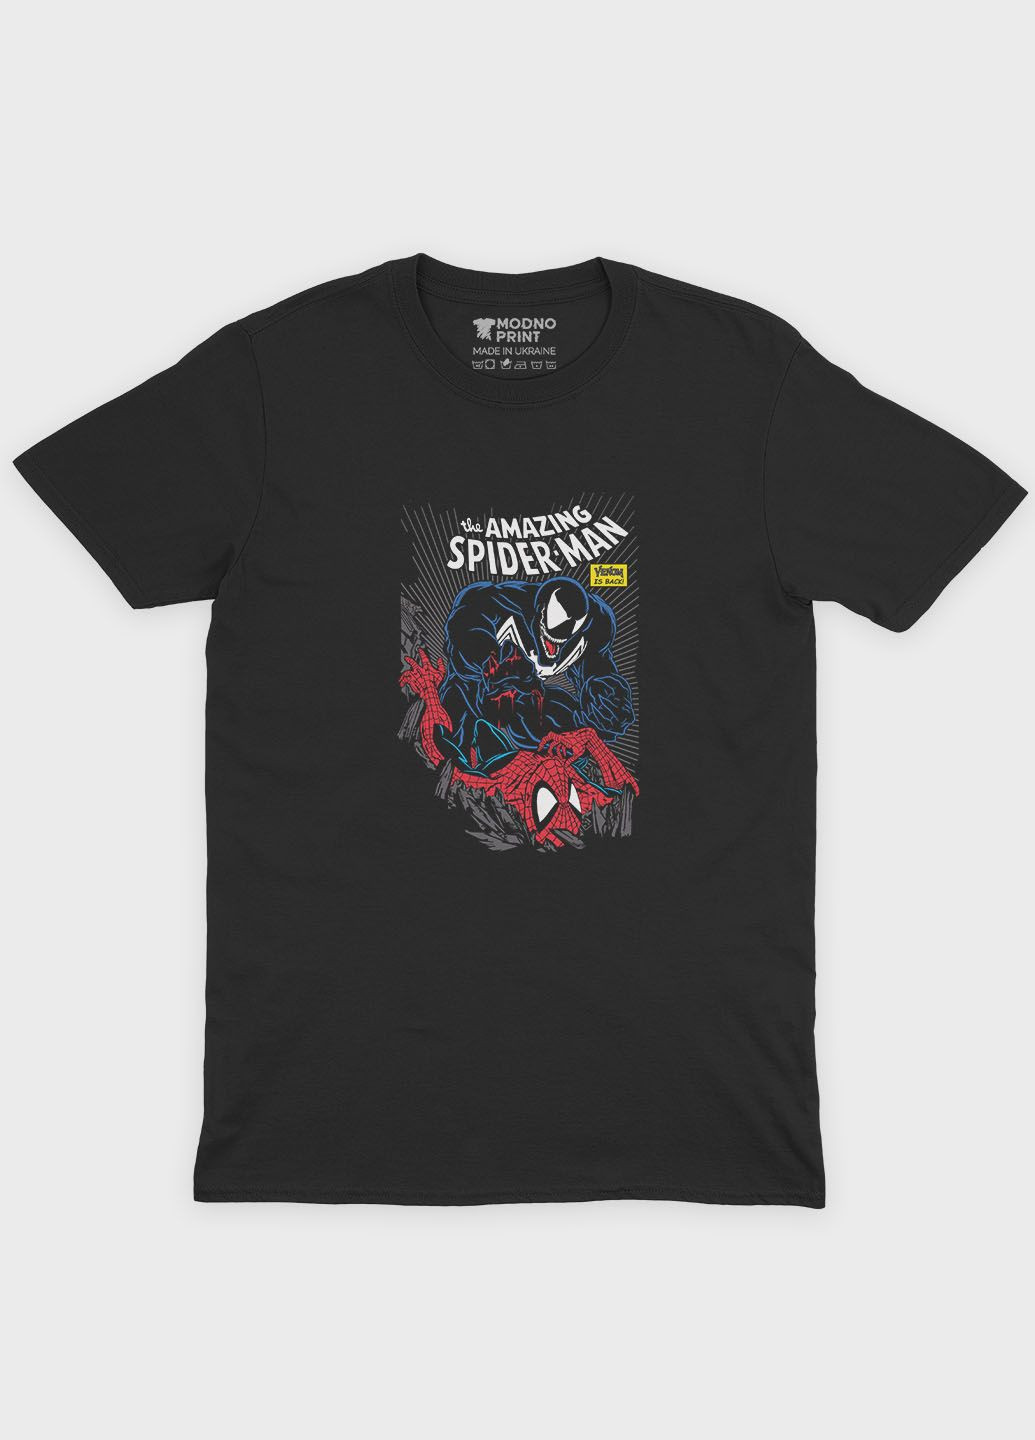 Мужская футболка с принтом супергероя - Человек-паук (TS001-1-BL-006-014-052-F) Modno - (292119542)